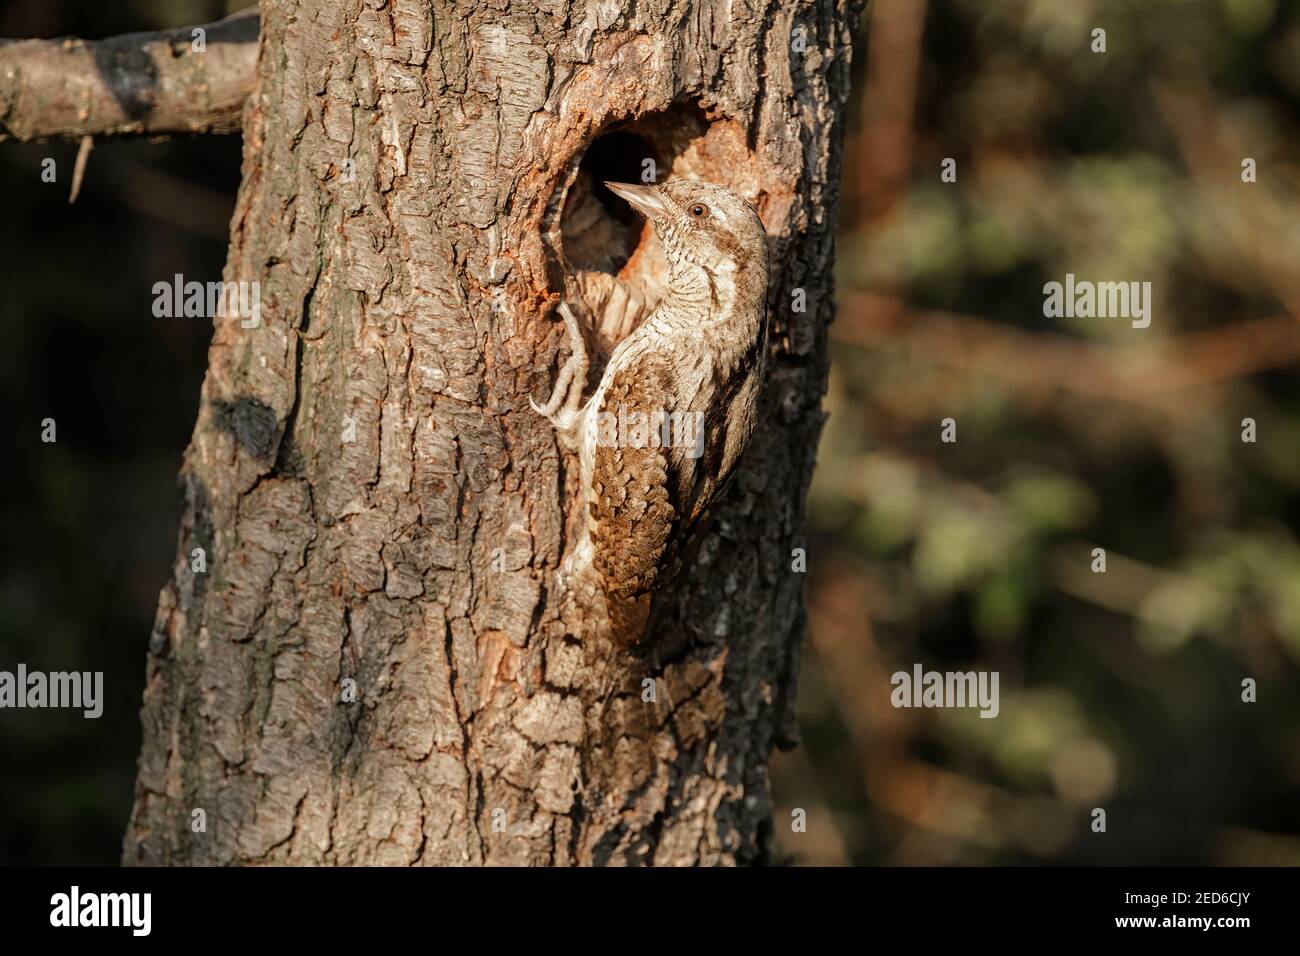 Eurasischer Wryneck, Jynx torquilla, erwachsen am Nest in einem Baum, Gabarevo, Bulgarien, 12. Juni 2012 Stockfoto